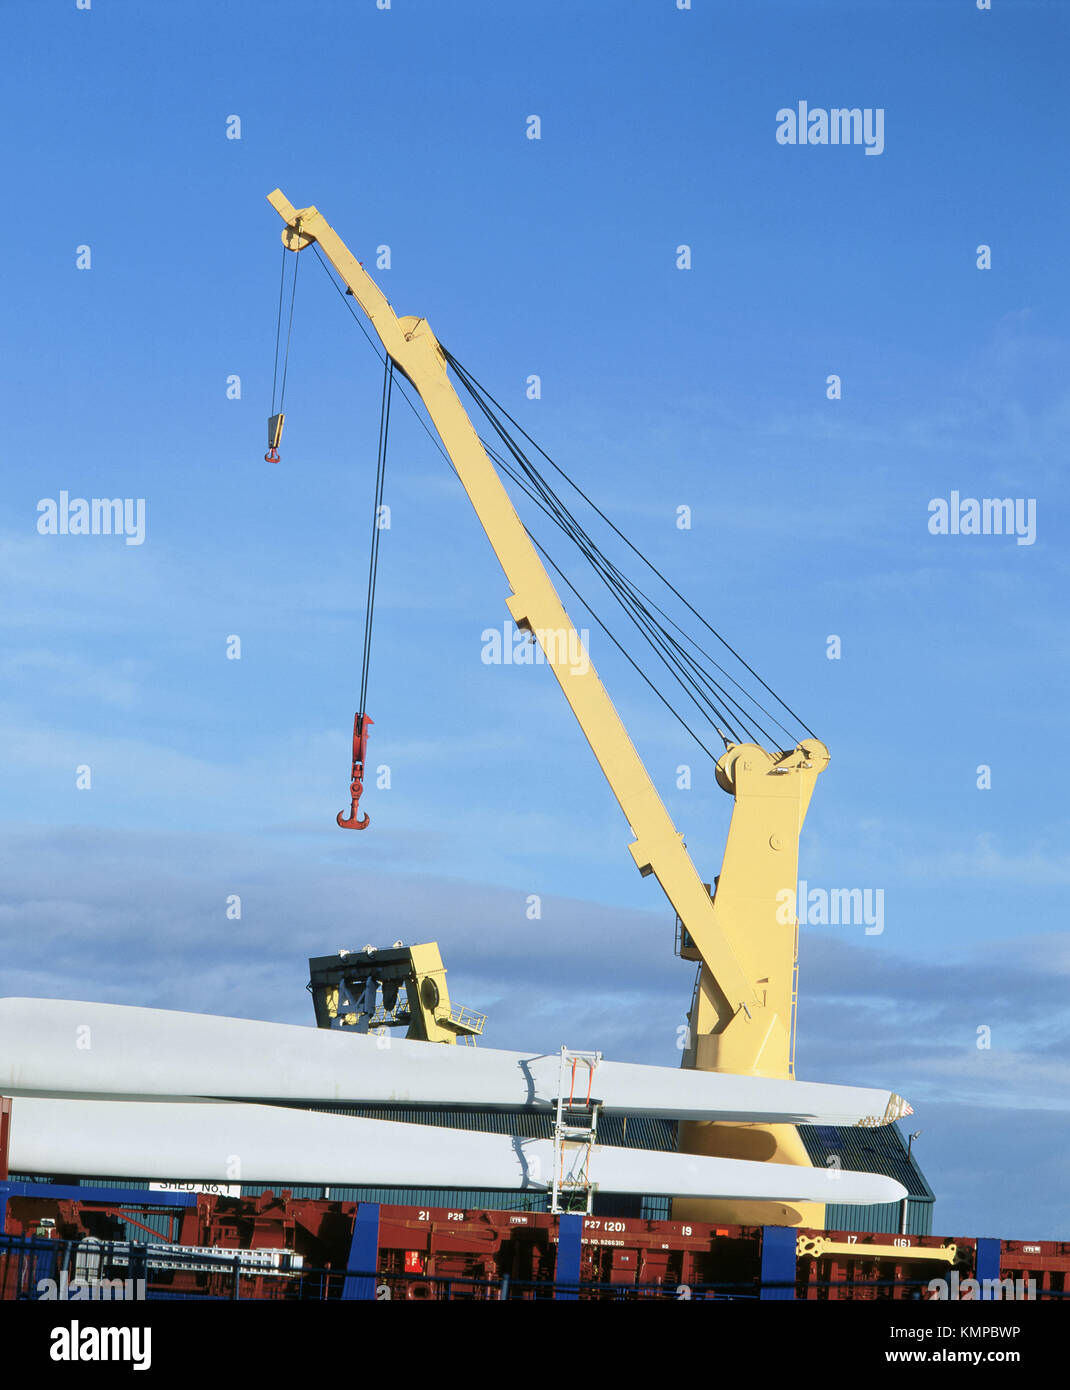 Crane on cargo ship Stock Photo